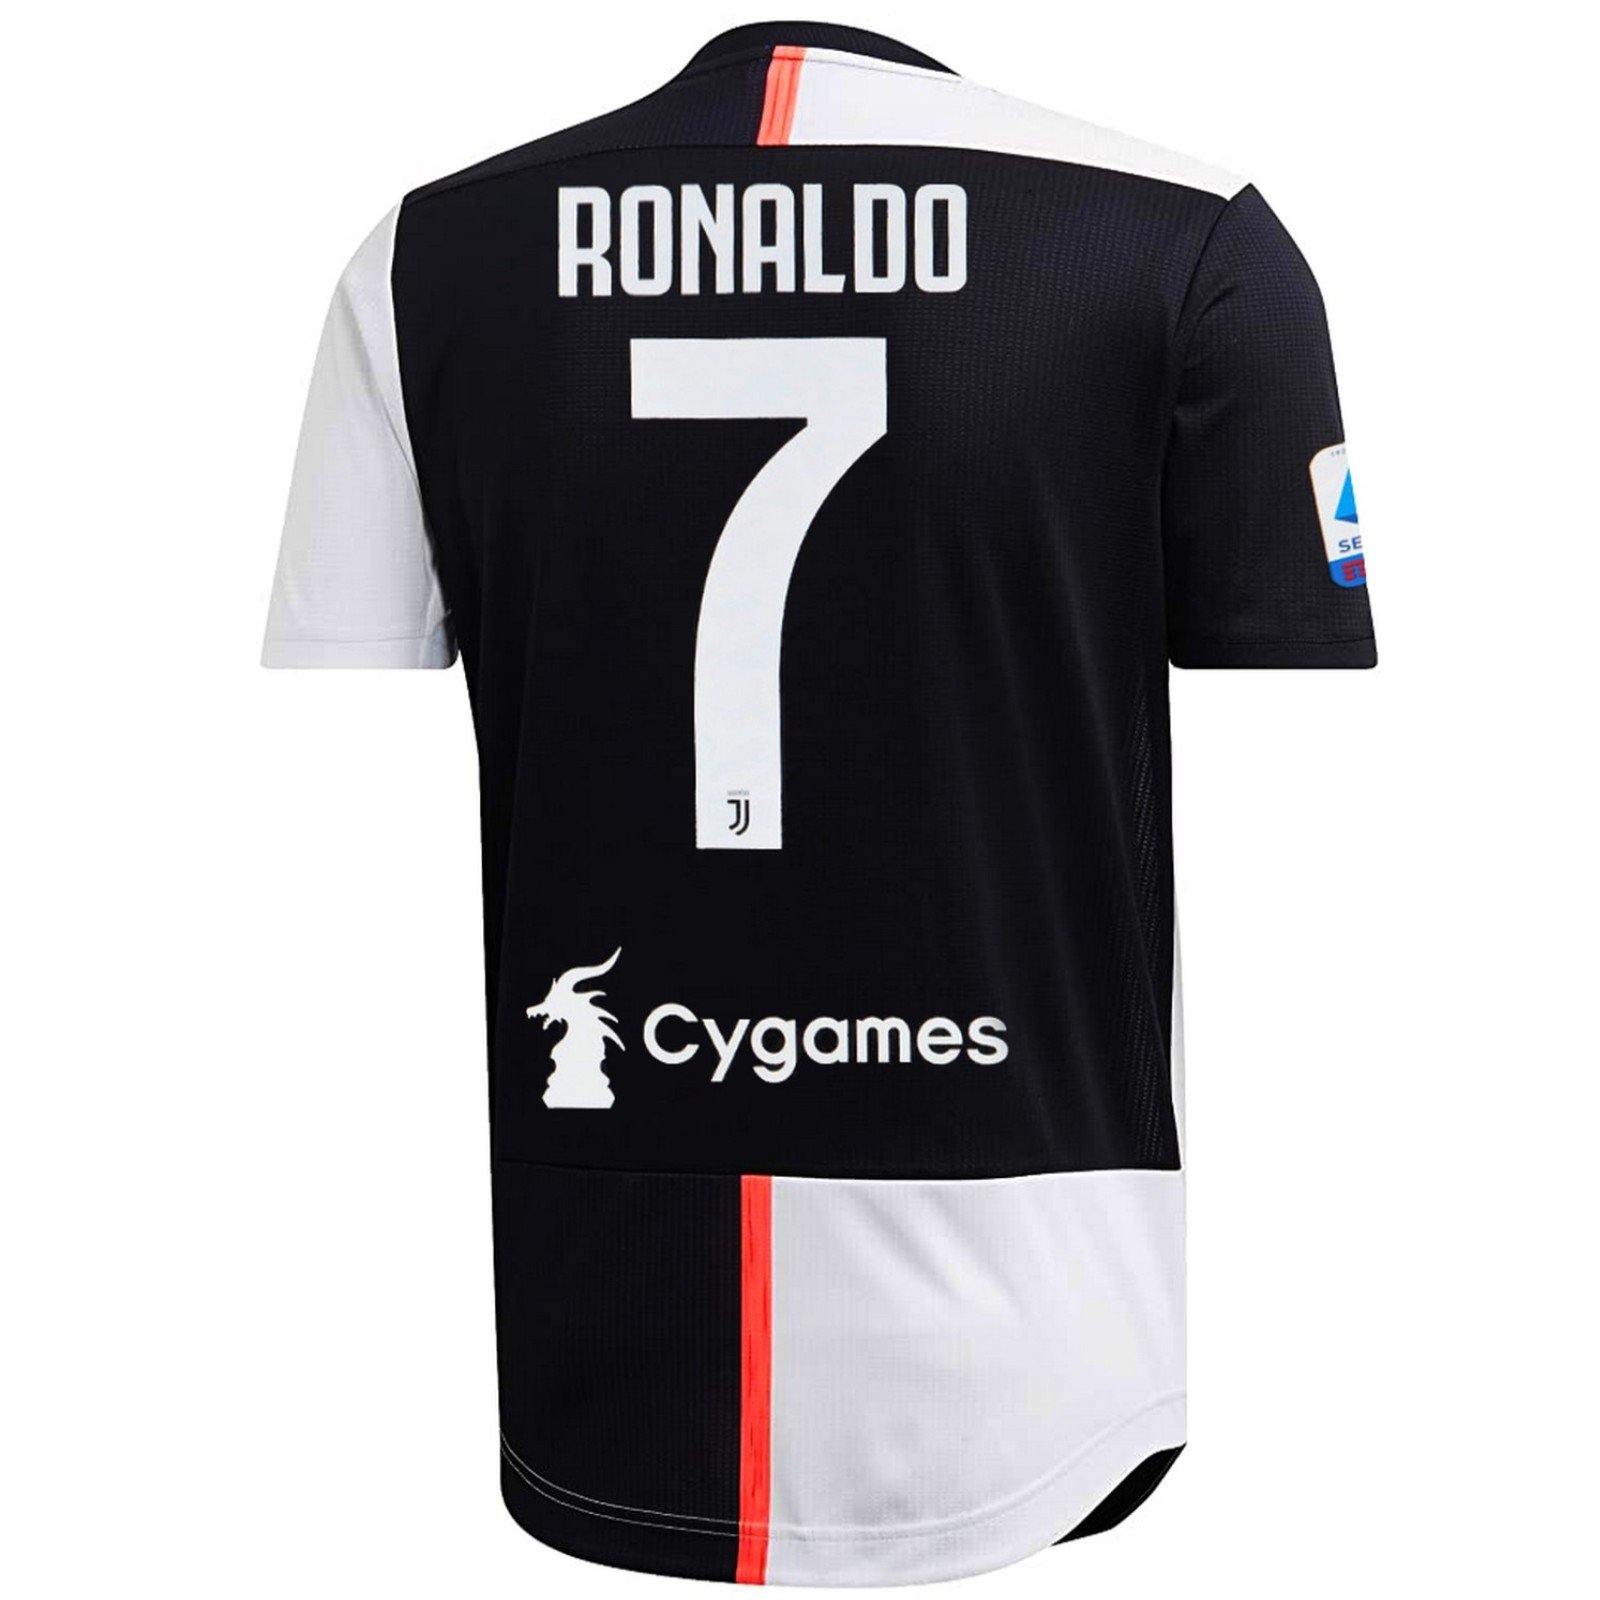 ronaldo shirt adidas